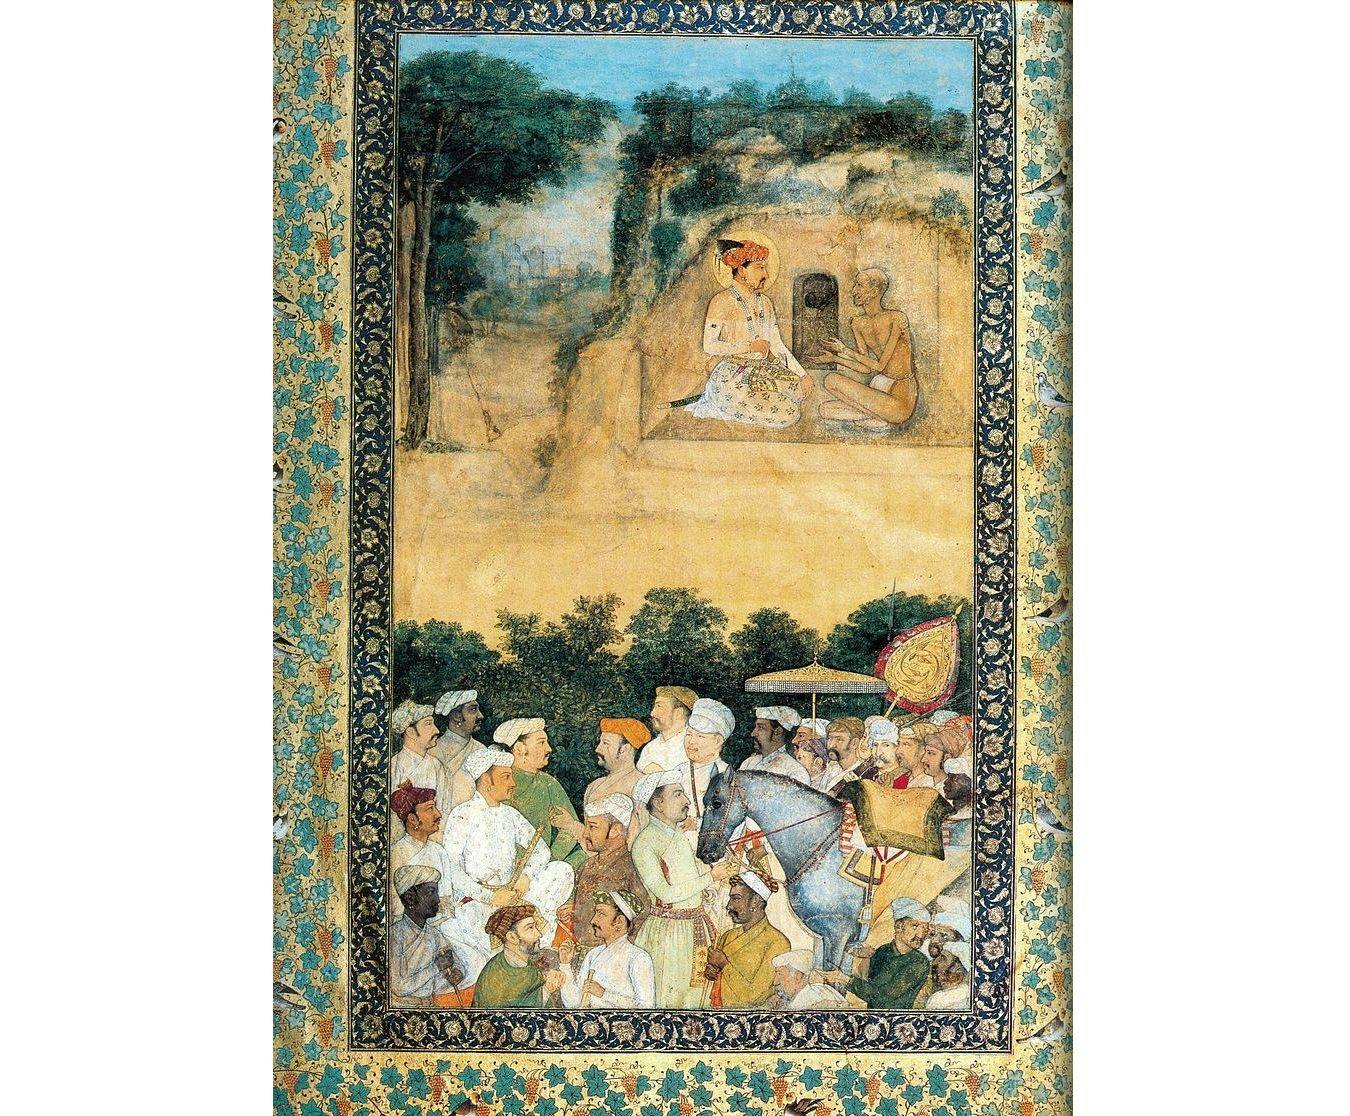 Jahangir visiting the ascetic Jadrup. ca. 1616-20